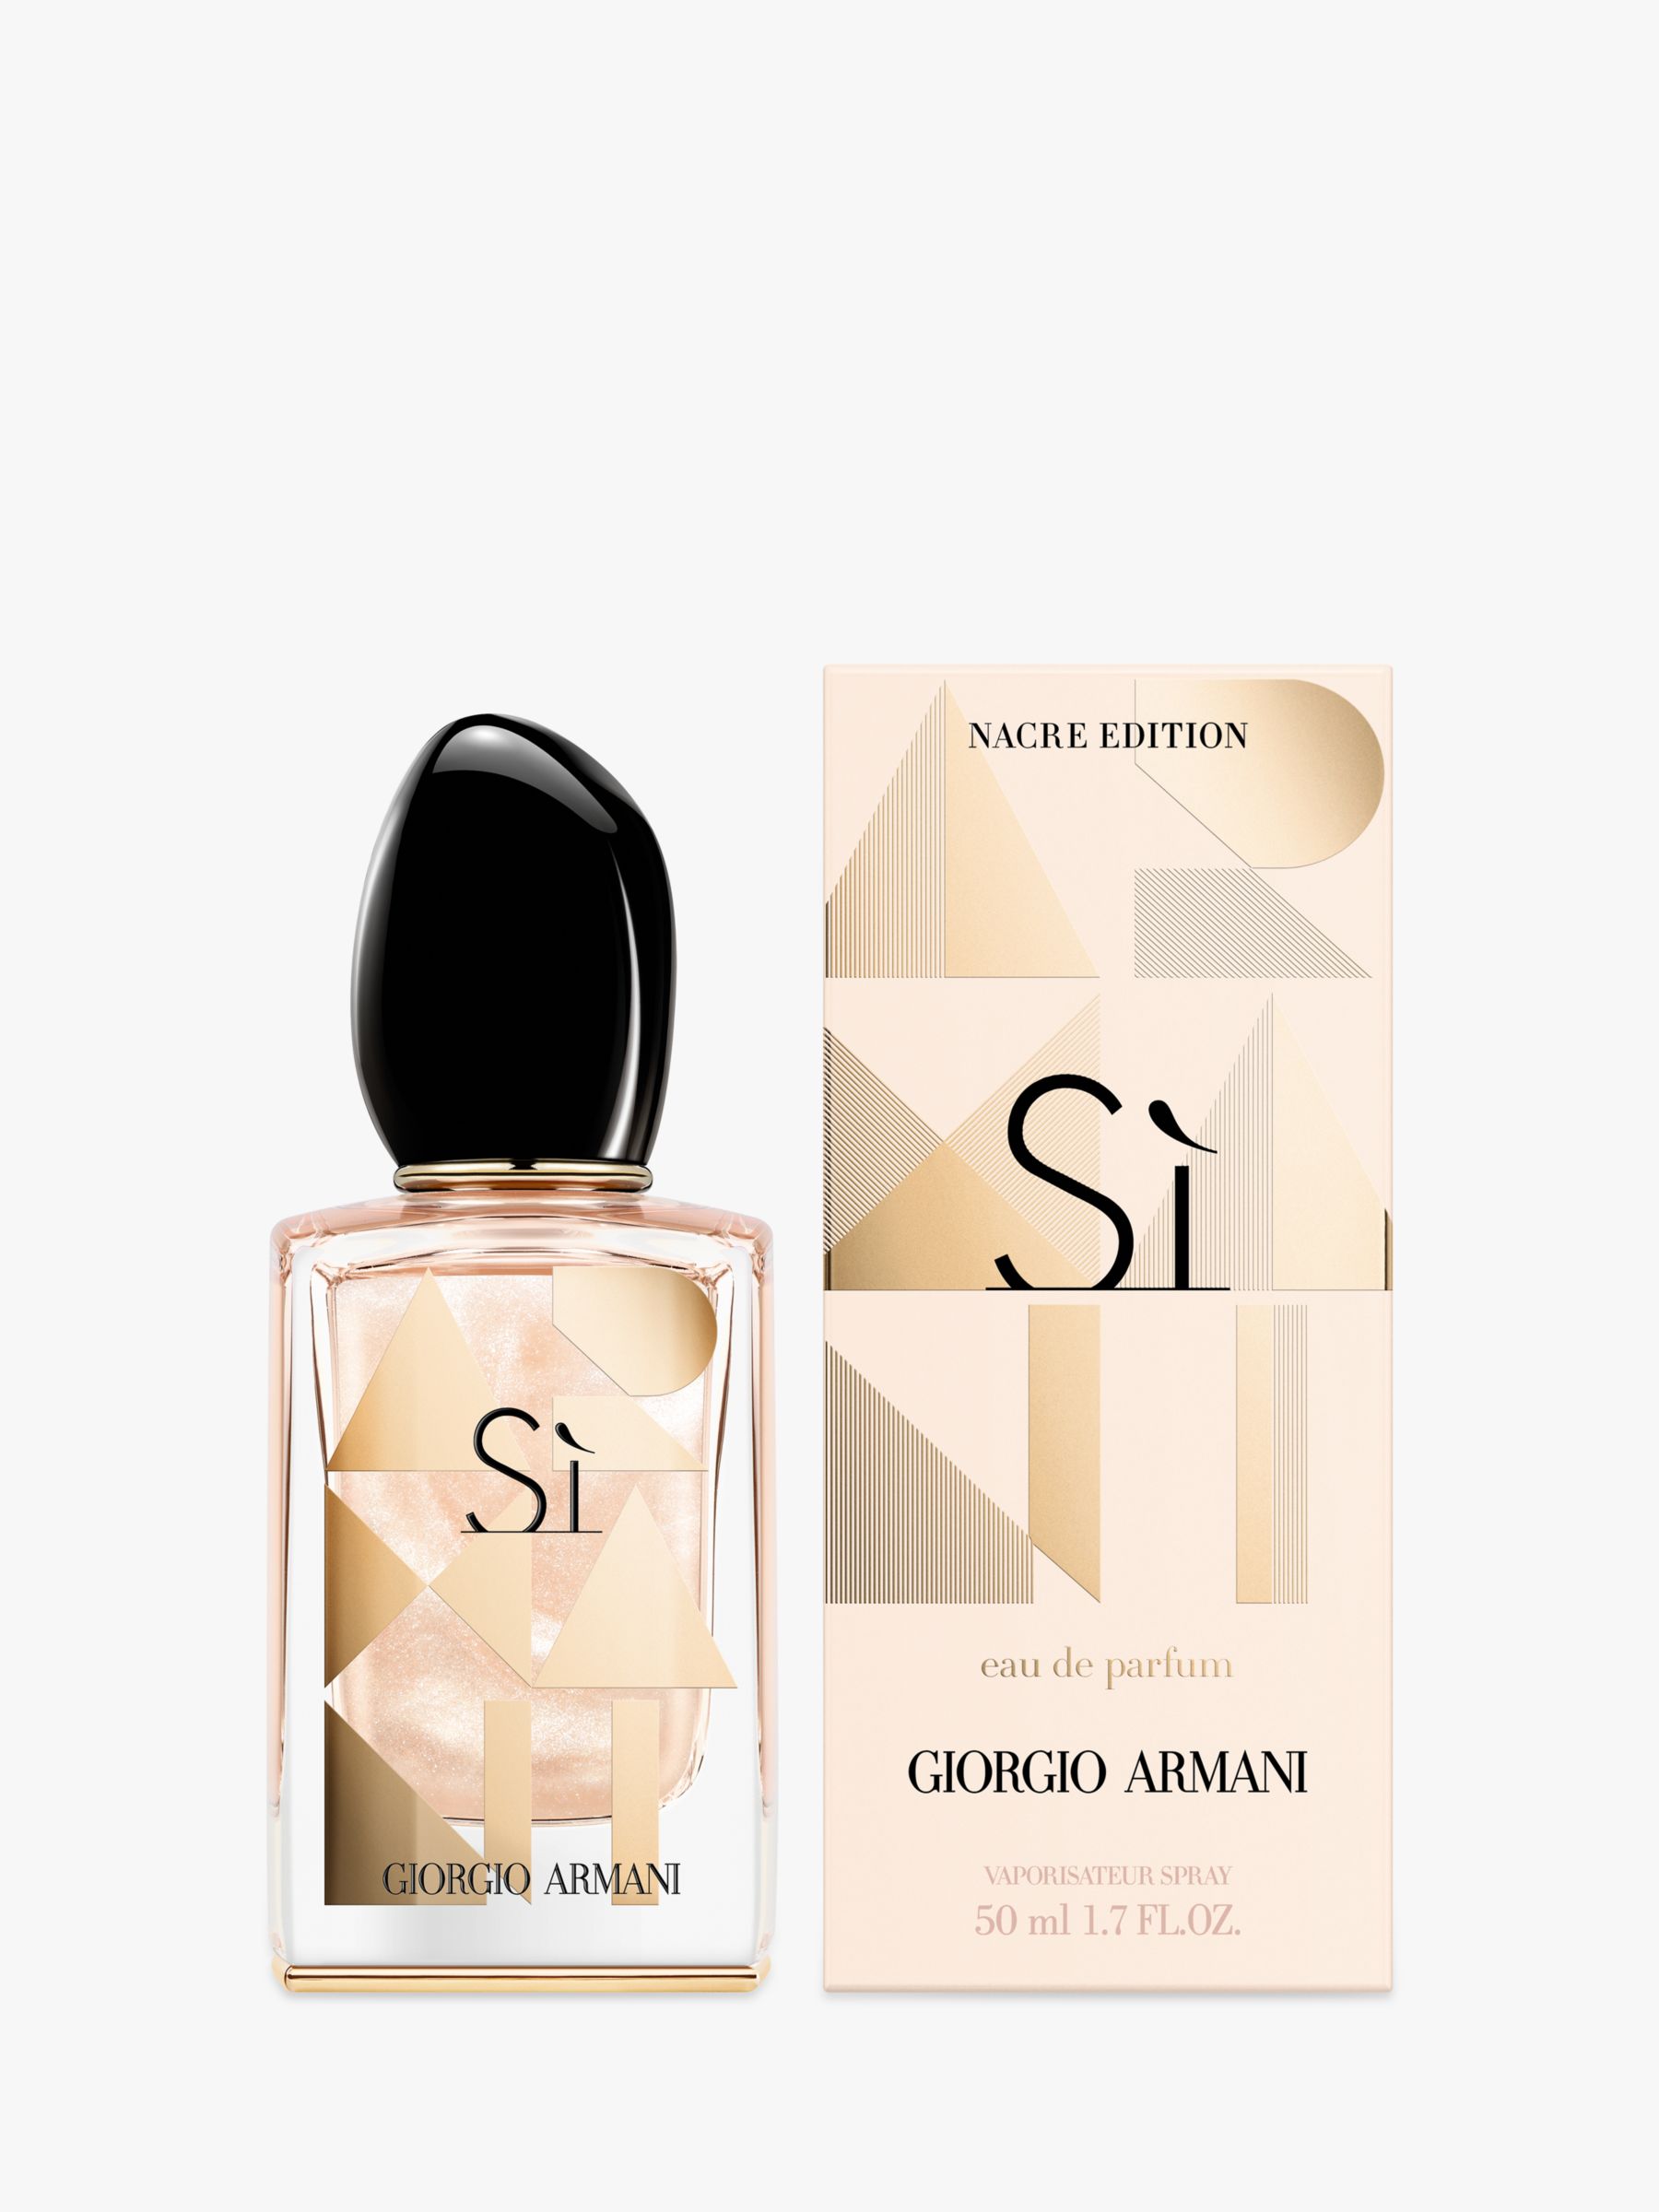 giorgio armani si limited edition perfume